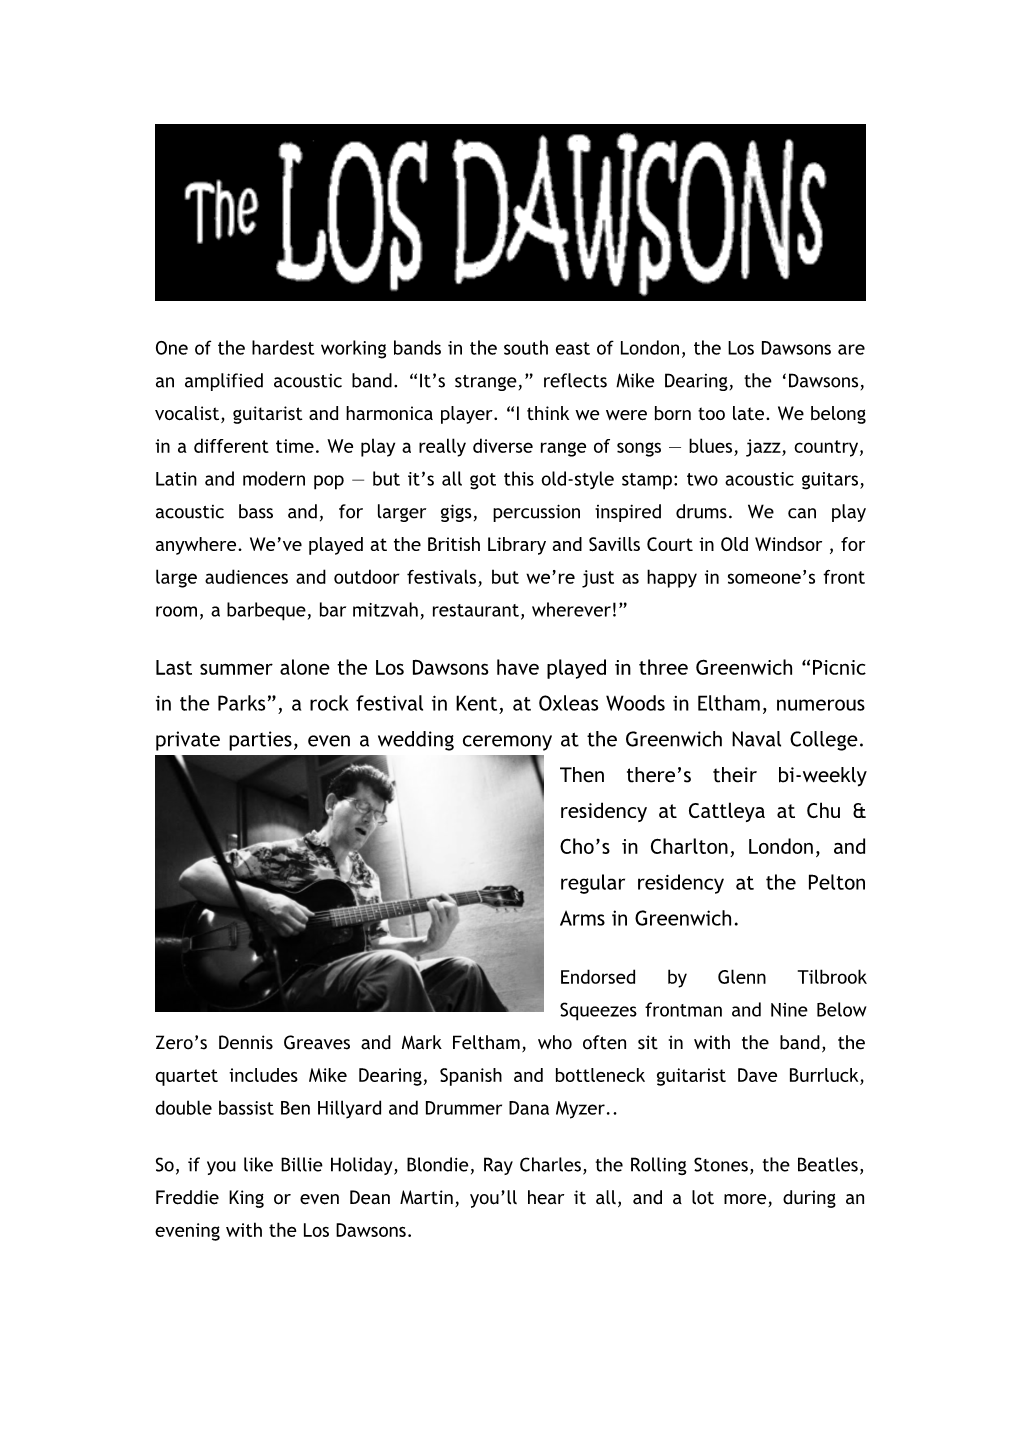 The Los Dawsons